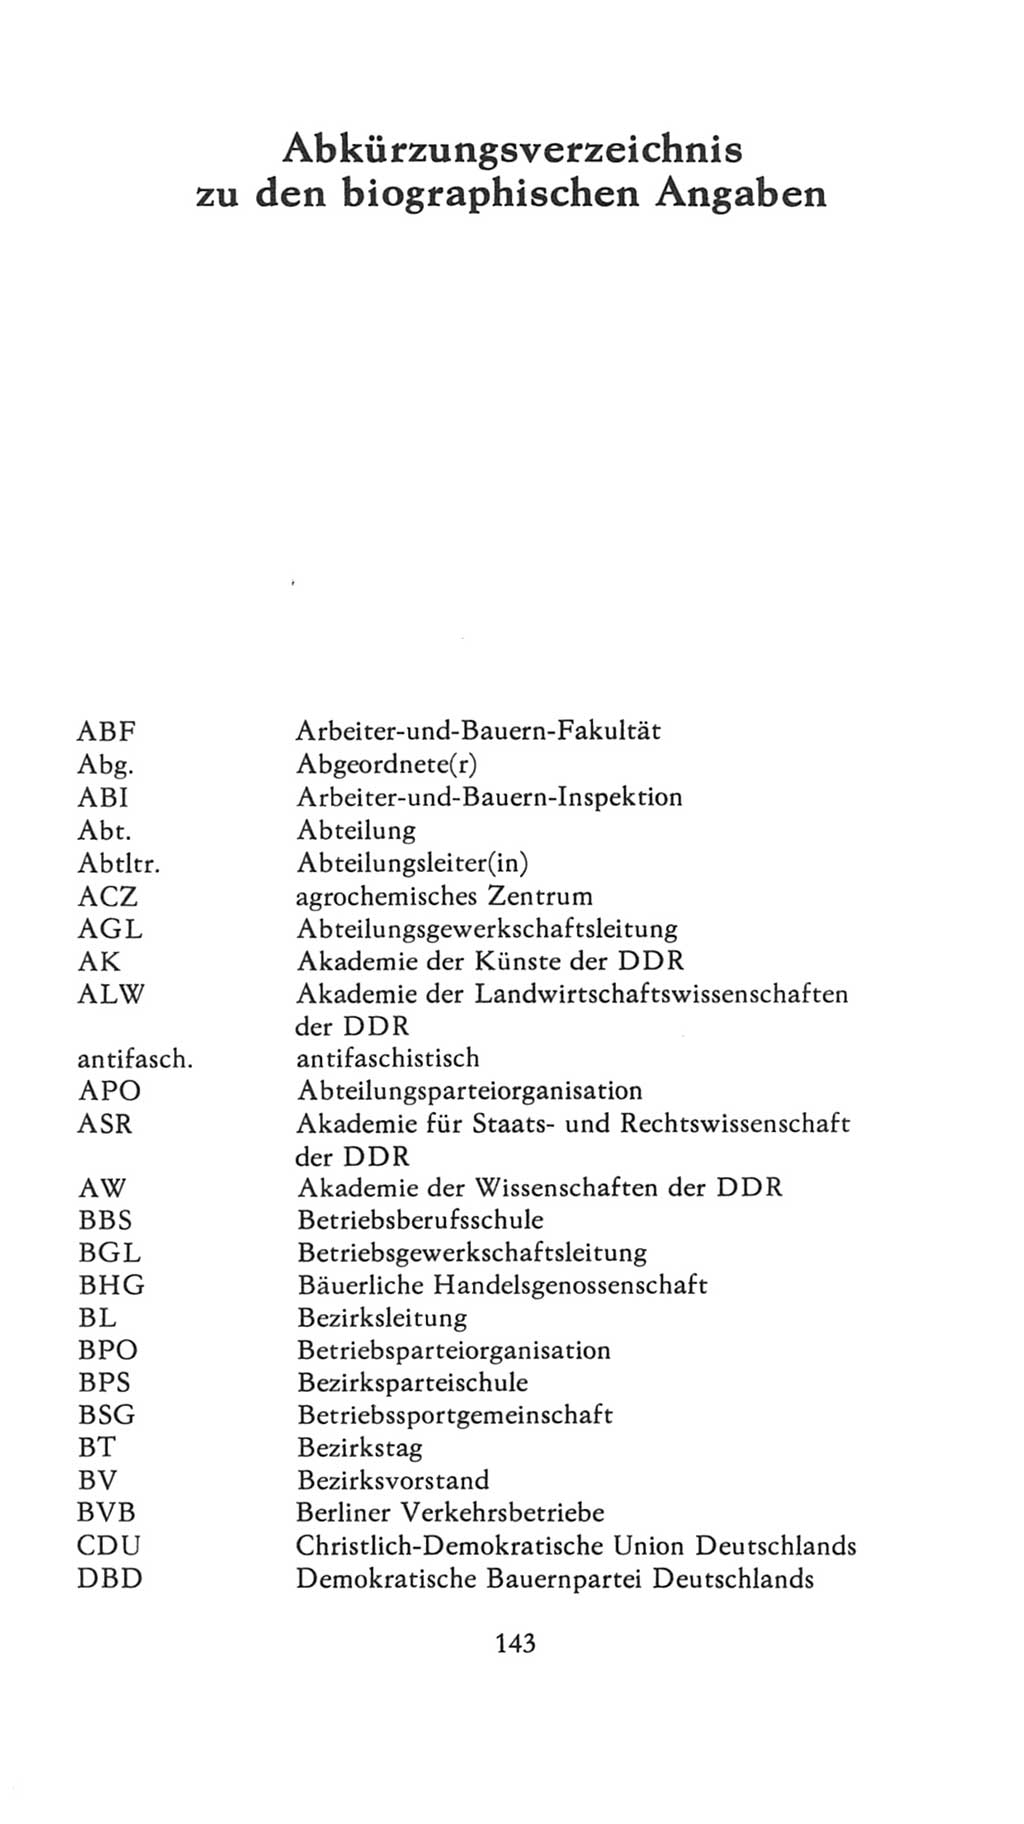 Volkskammer (VK) der Deutschen Demokratischen Republik (DDR), 7. Wahlperiode 1976-1981, Seite 143 (VK. DDR 7. WP. 1976-1981, S. 143)